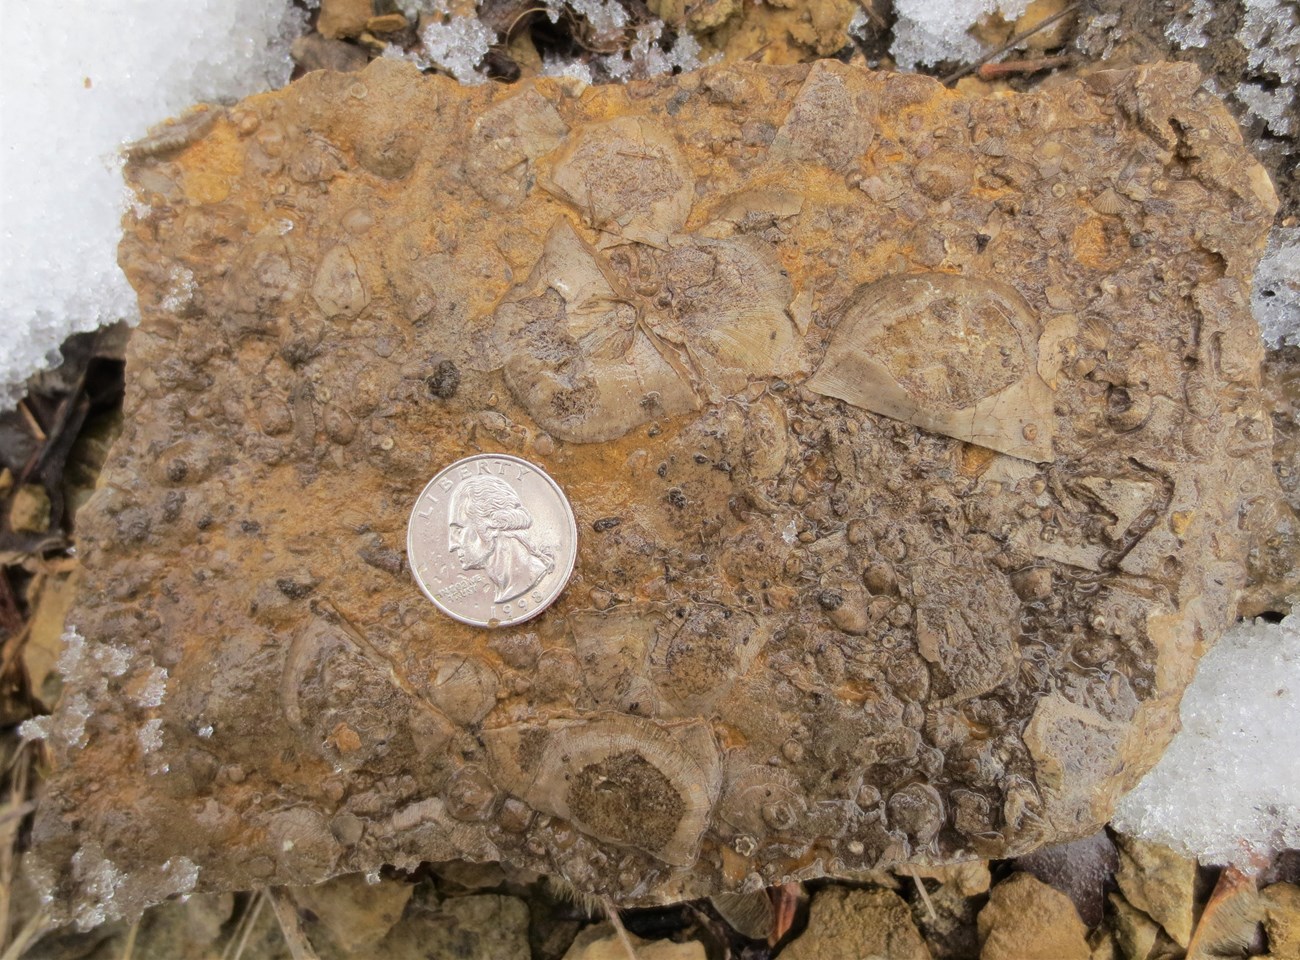 stone slab with fossil brachiopods